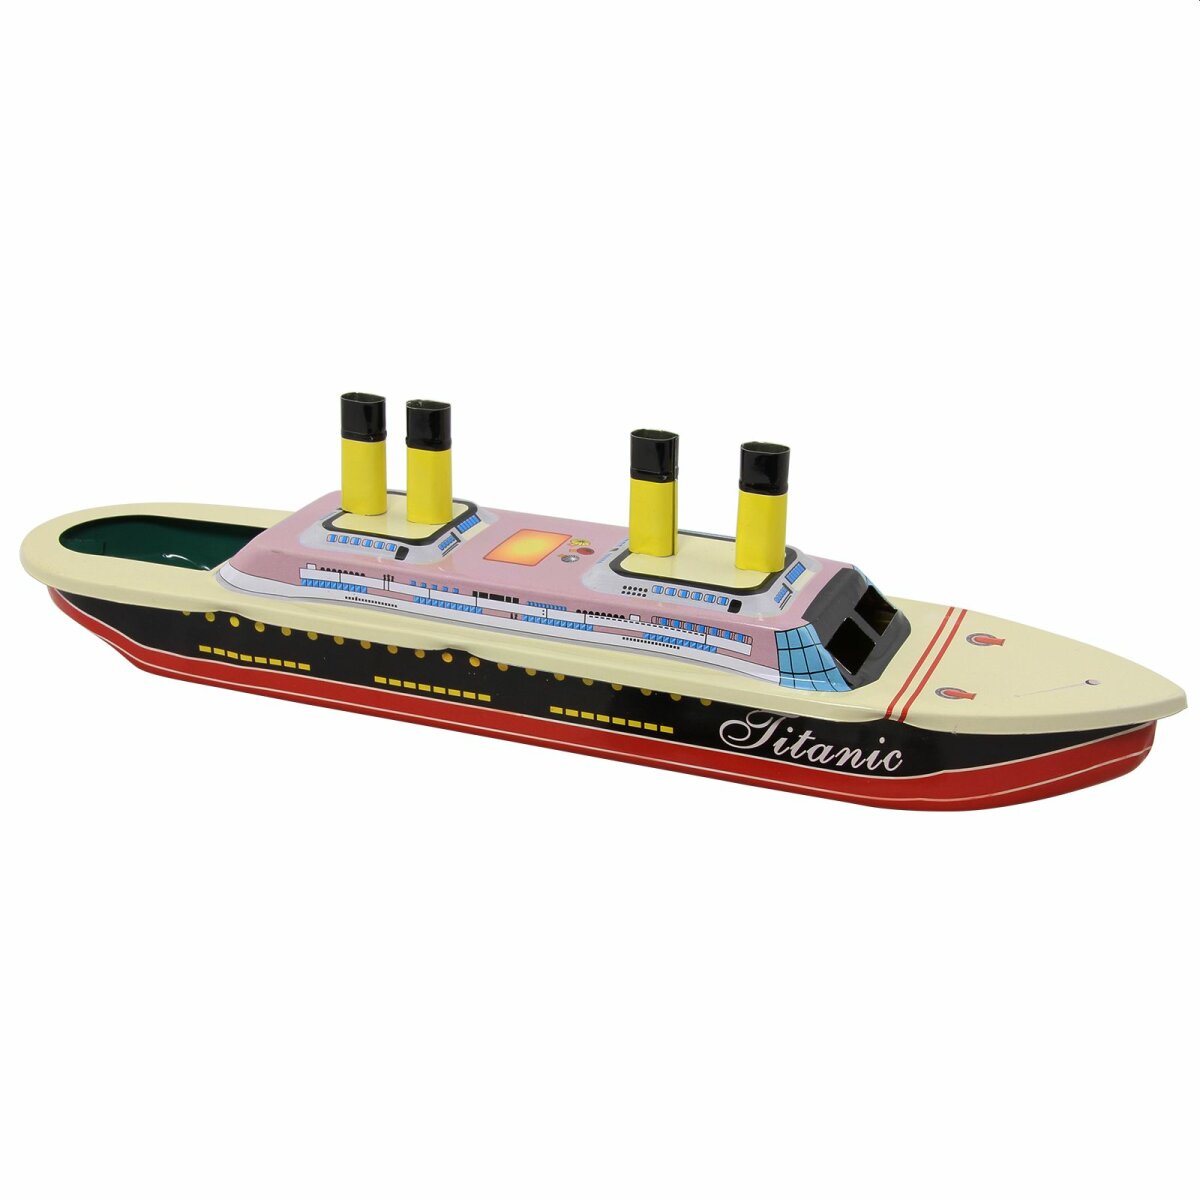 Blechspielzeug Boot Mini Litho Kerzenboot 01 Pop Pop Knatterboot aus Blech 